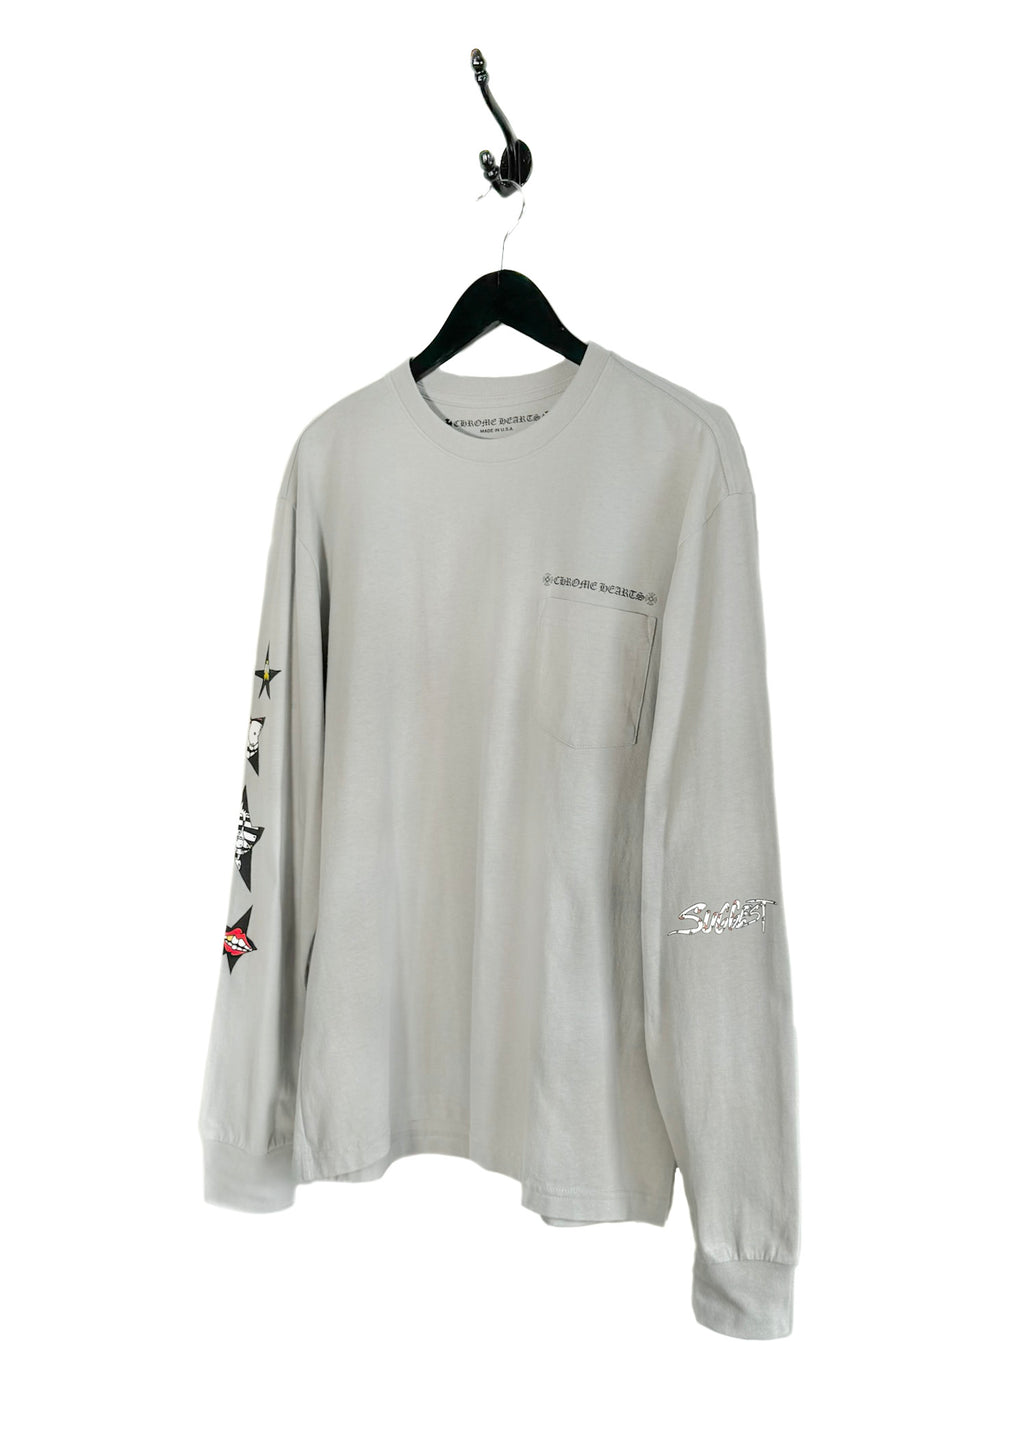 T-shirt gris à manches longues avec imprimé étoiles Chrome Hearts Matty Boy